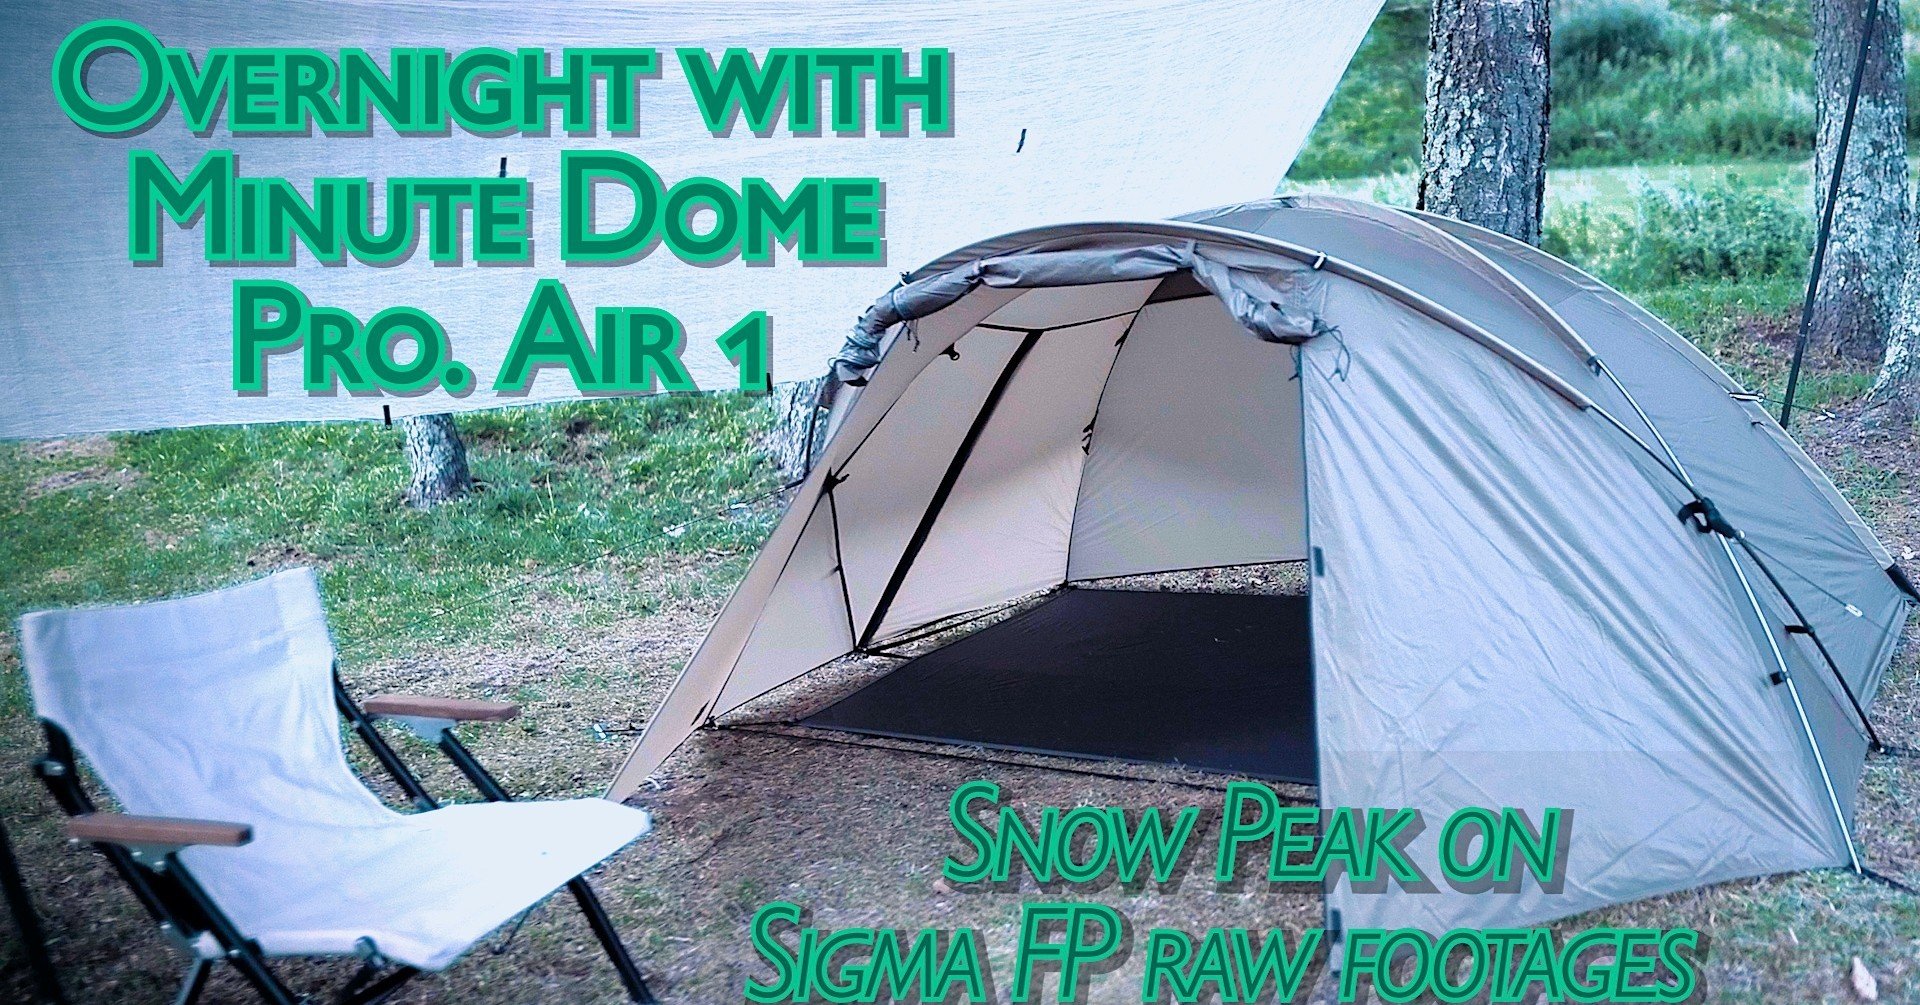 動画補足記事：「Sigma fp meets Snow Peak: ミニッツドーム Pro. Air